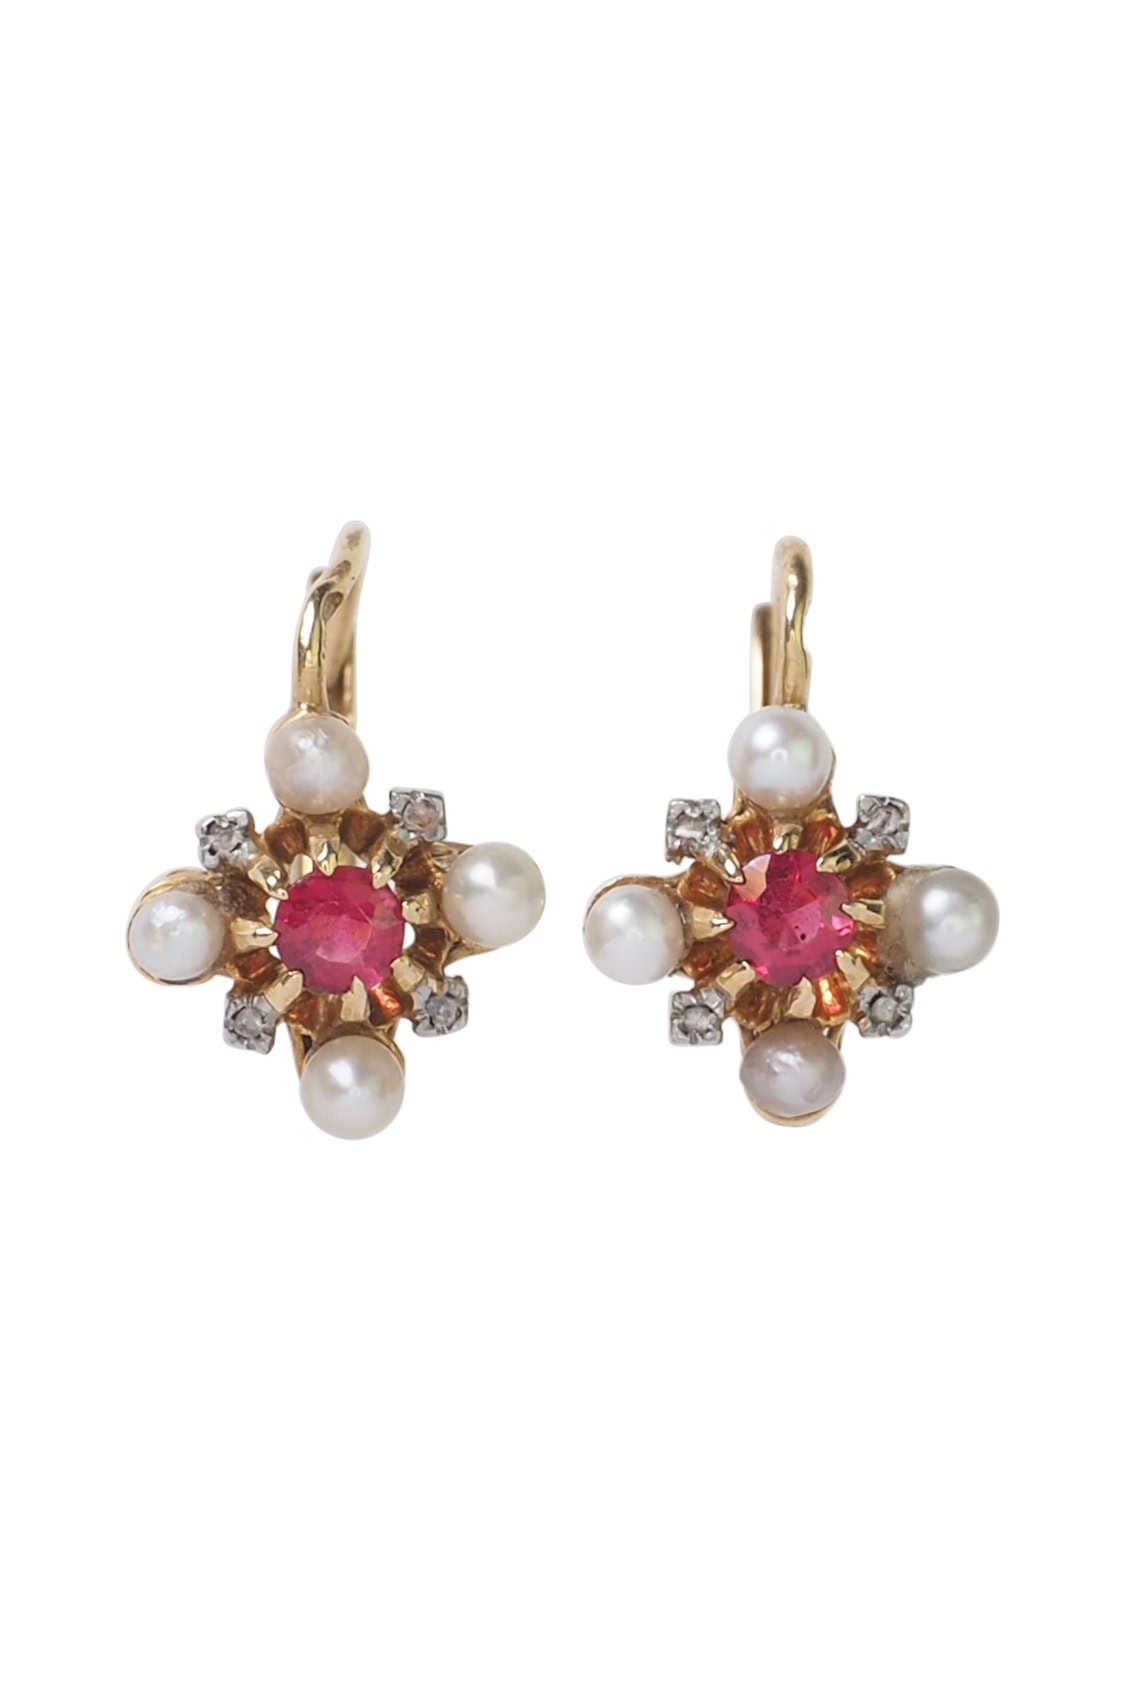 Art Nouveau Ohrringe mit Rubine, Diamanten und Perlen aus 18 Karat Gold